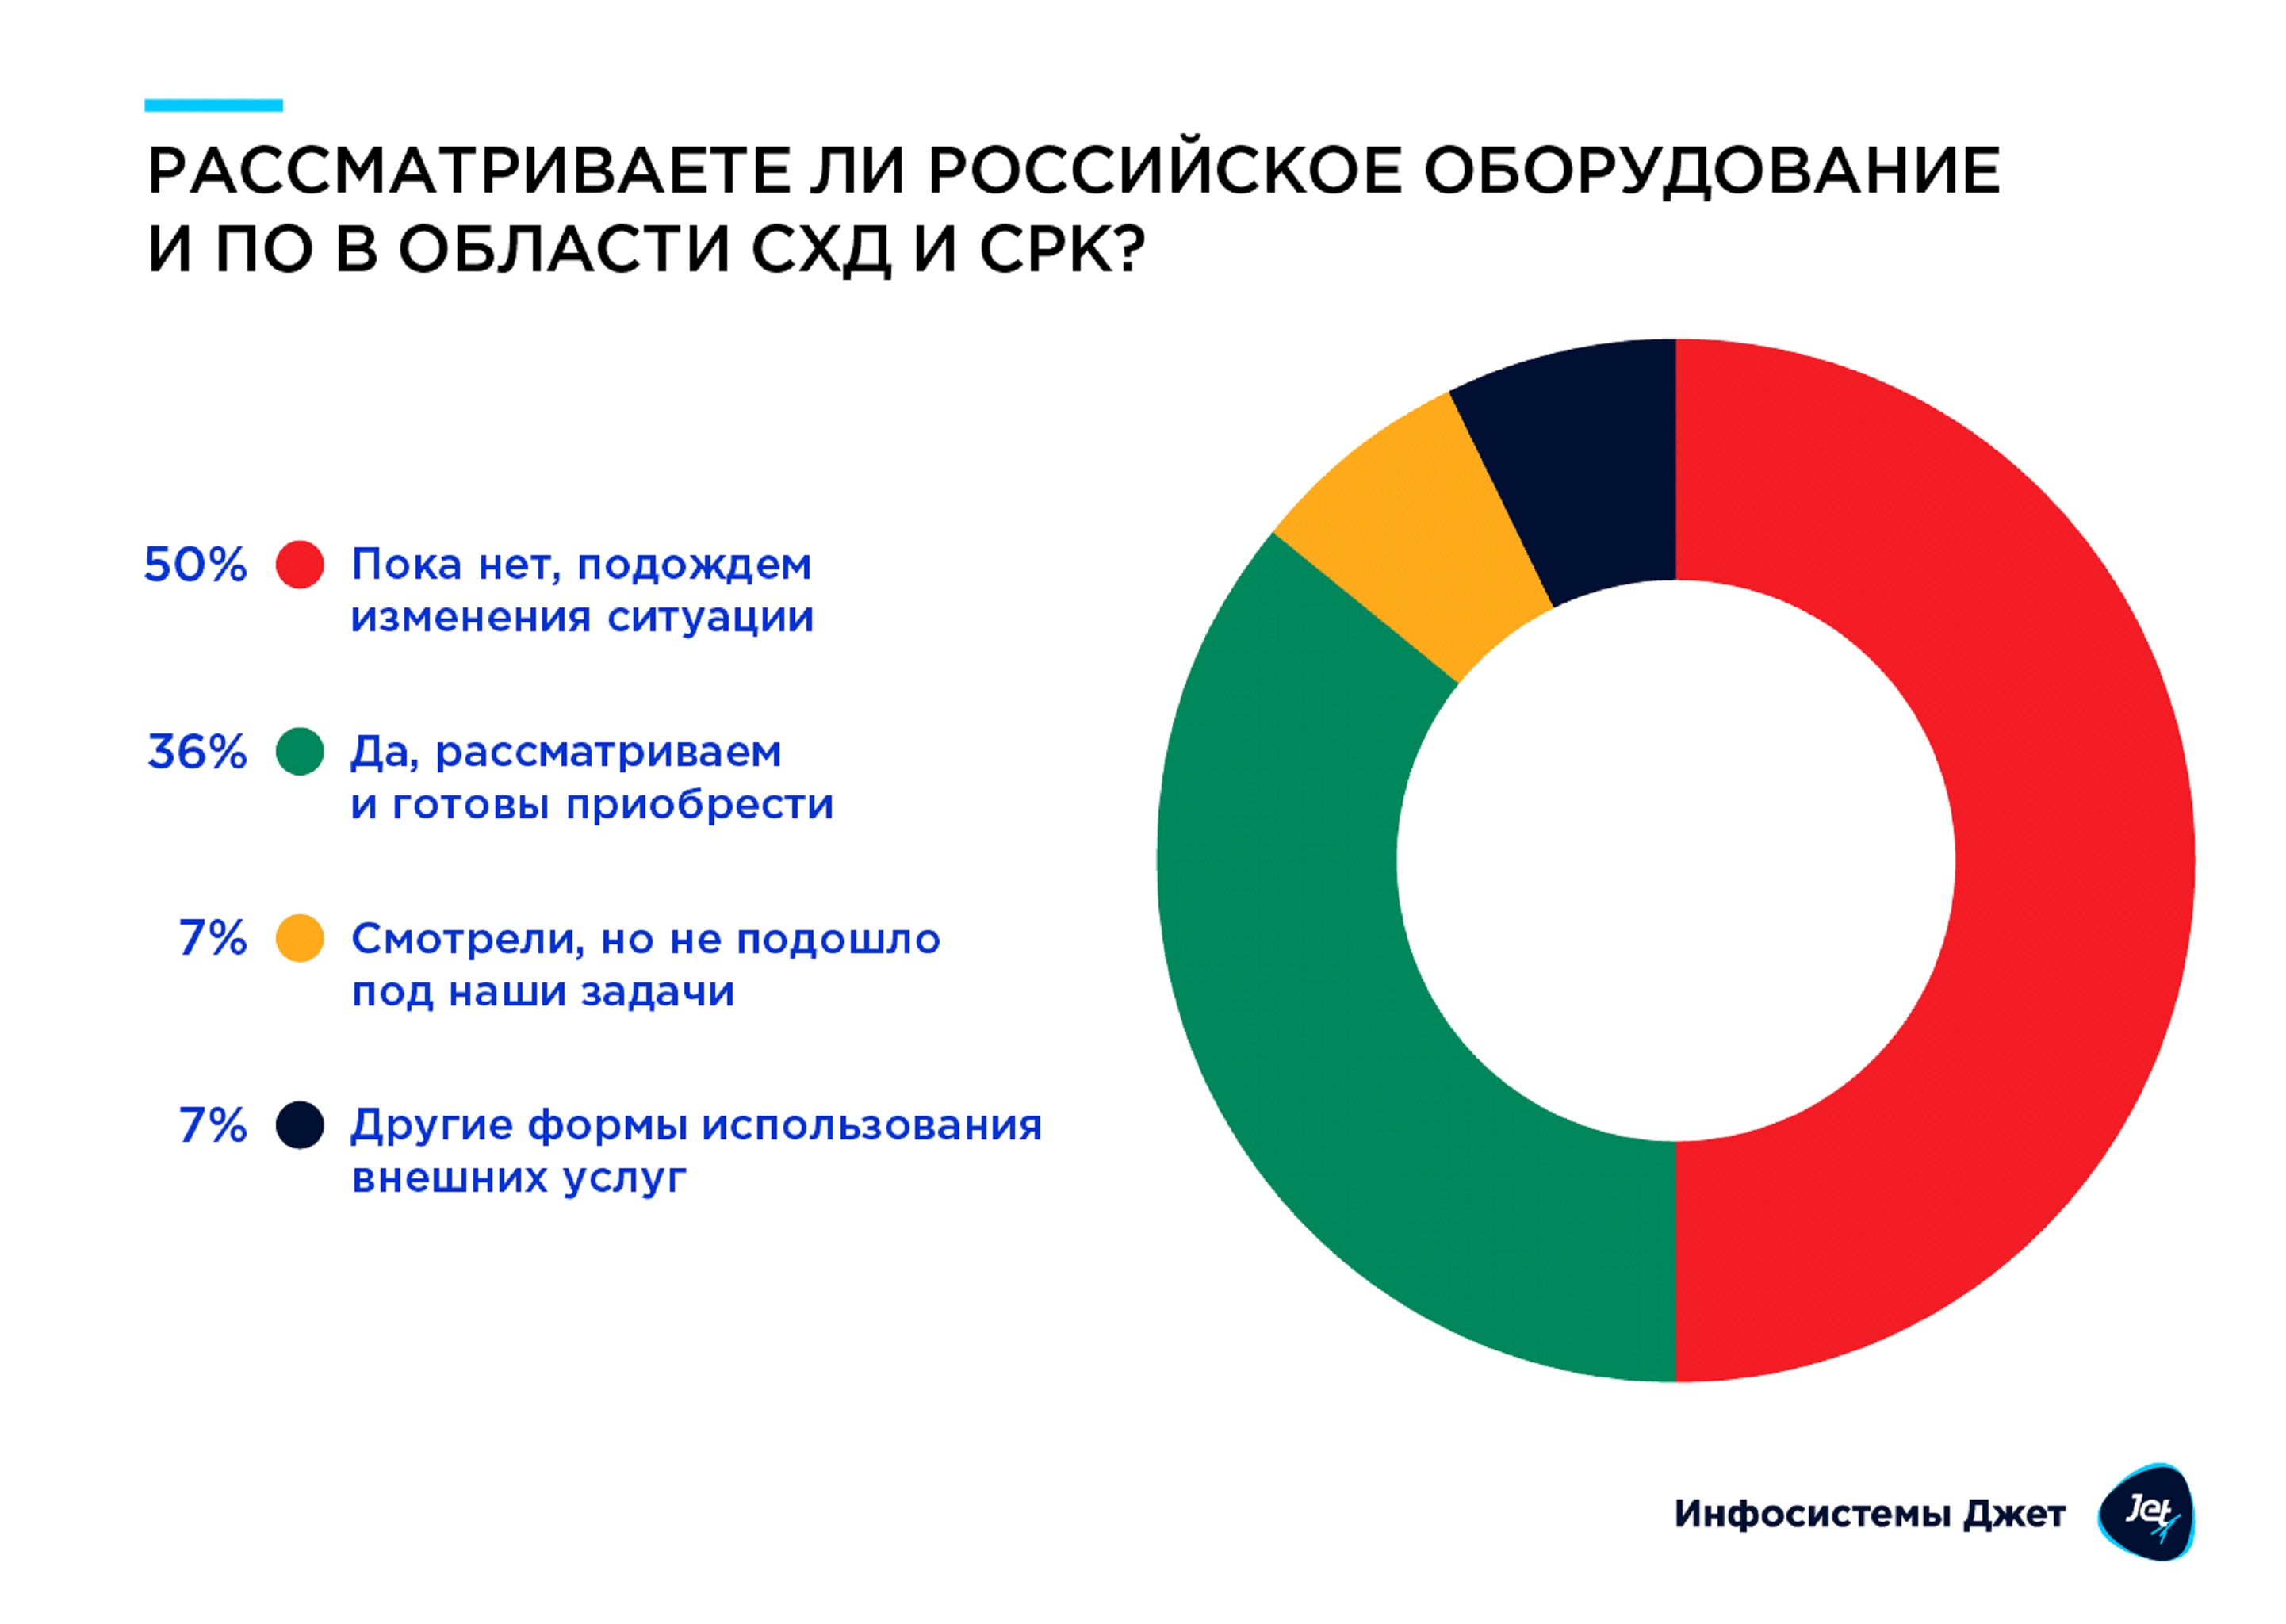 Корпоративные системы хранения данных в России — 2022